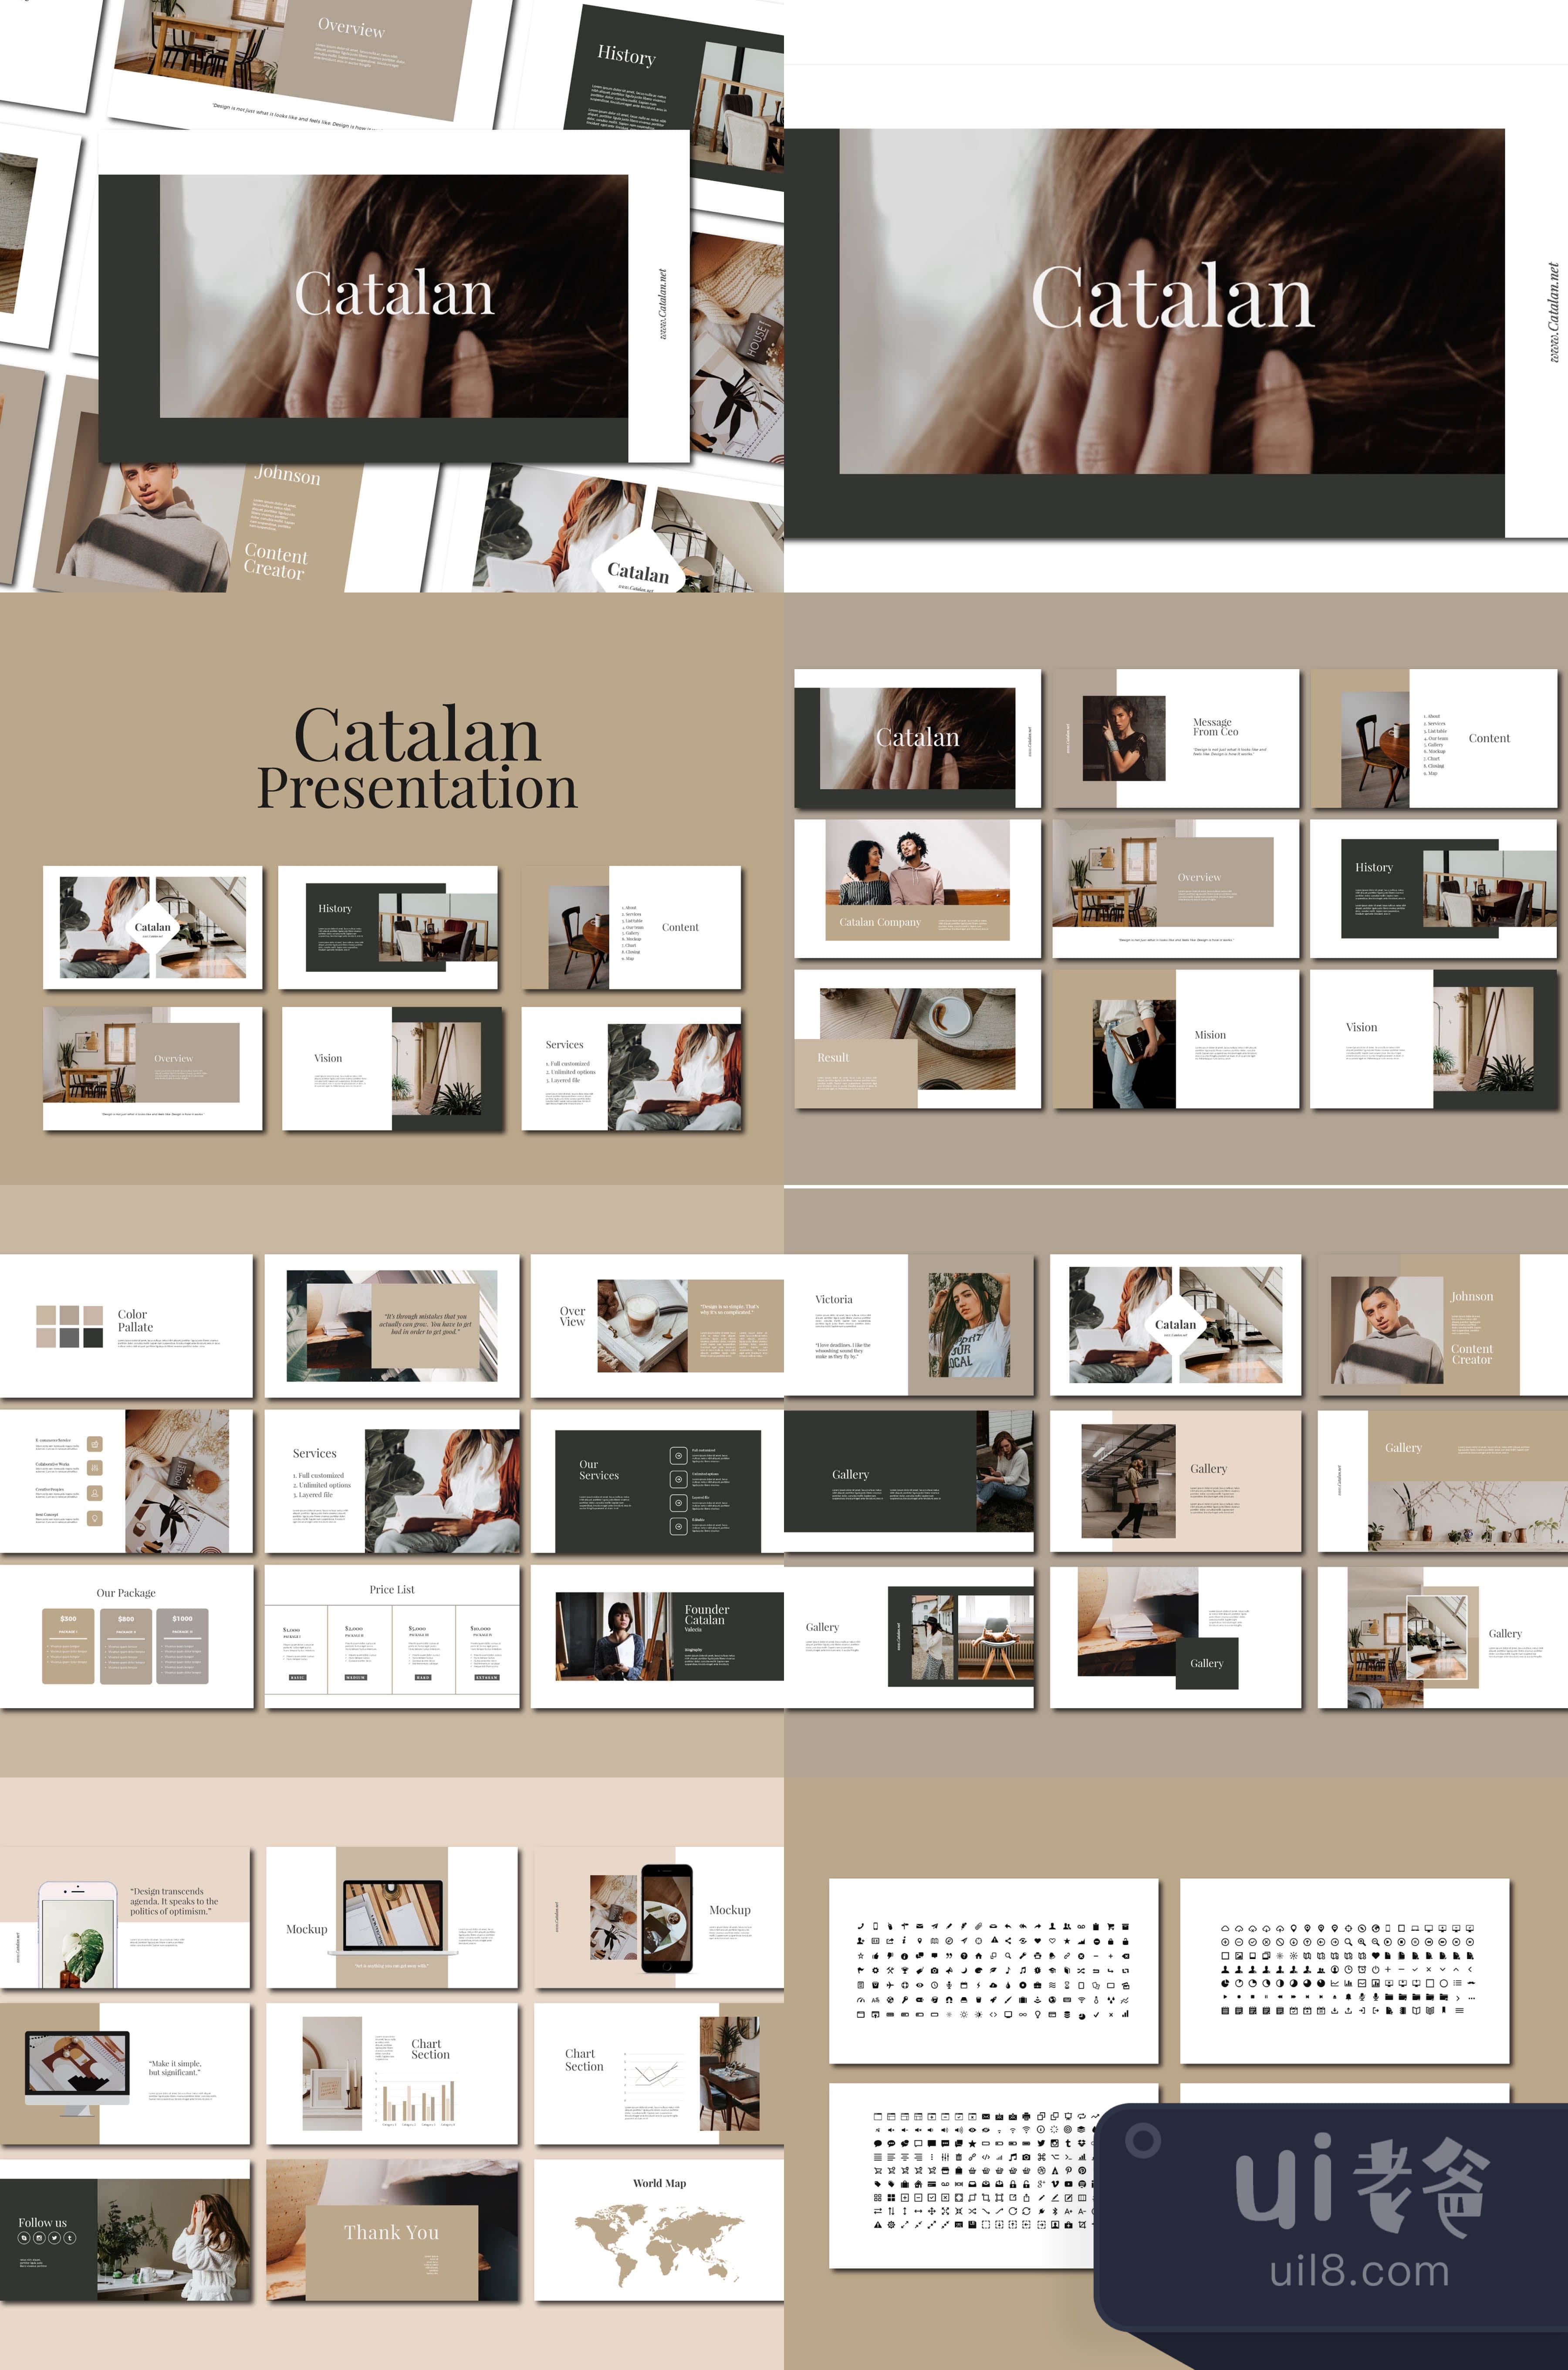 加泰罗尼亚语 - PowerPoint模板 (Catalan - PowerPoint Templa插图